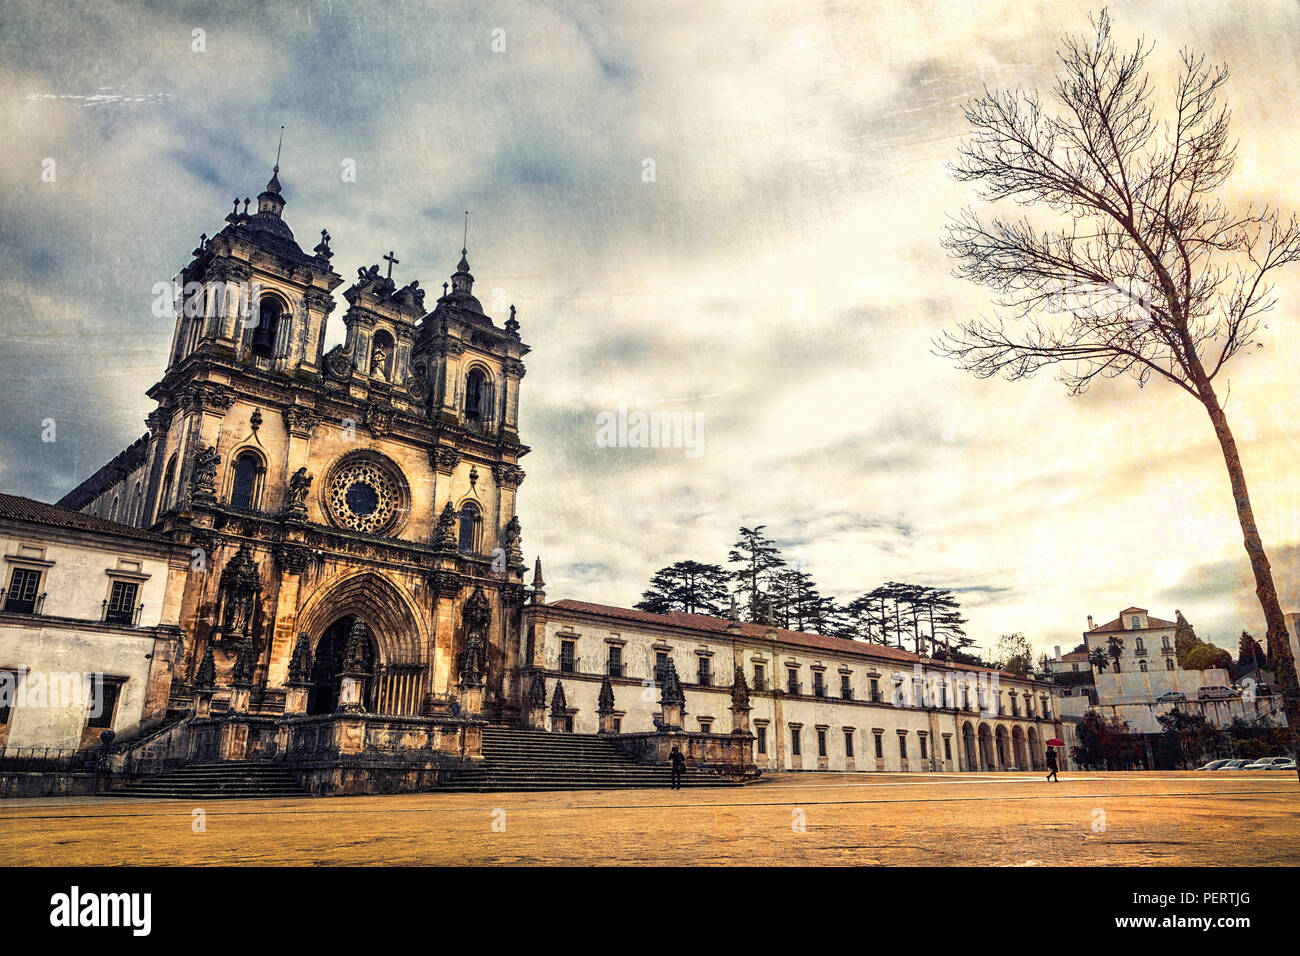 Impresionante Monasterio Alcobaca,vistas panorámicas,Portugal. Foto de stock